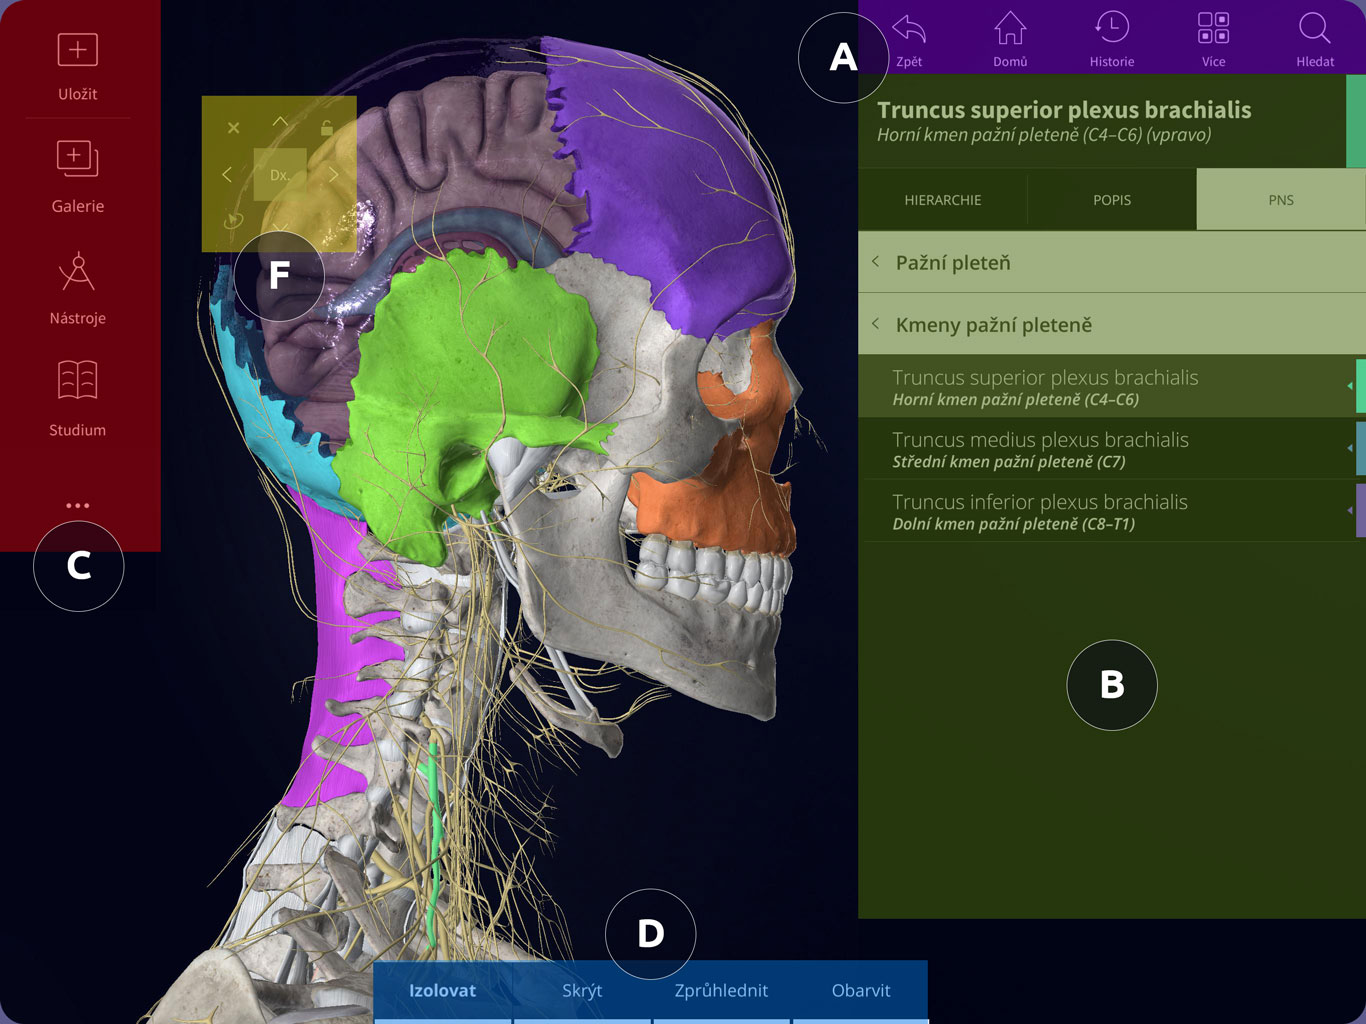 Uživatelské rozhraní Anatomyka